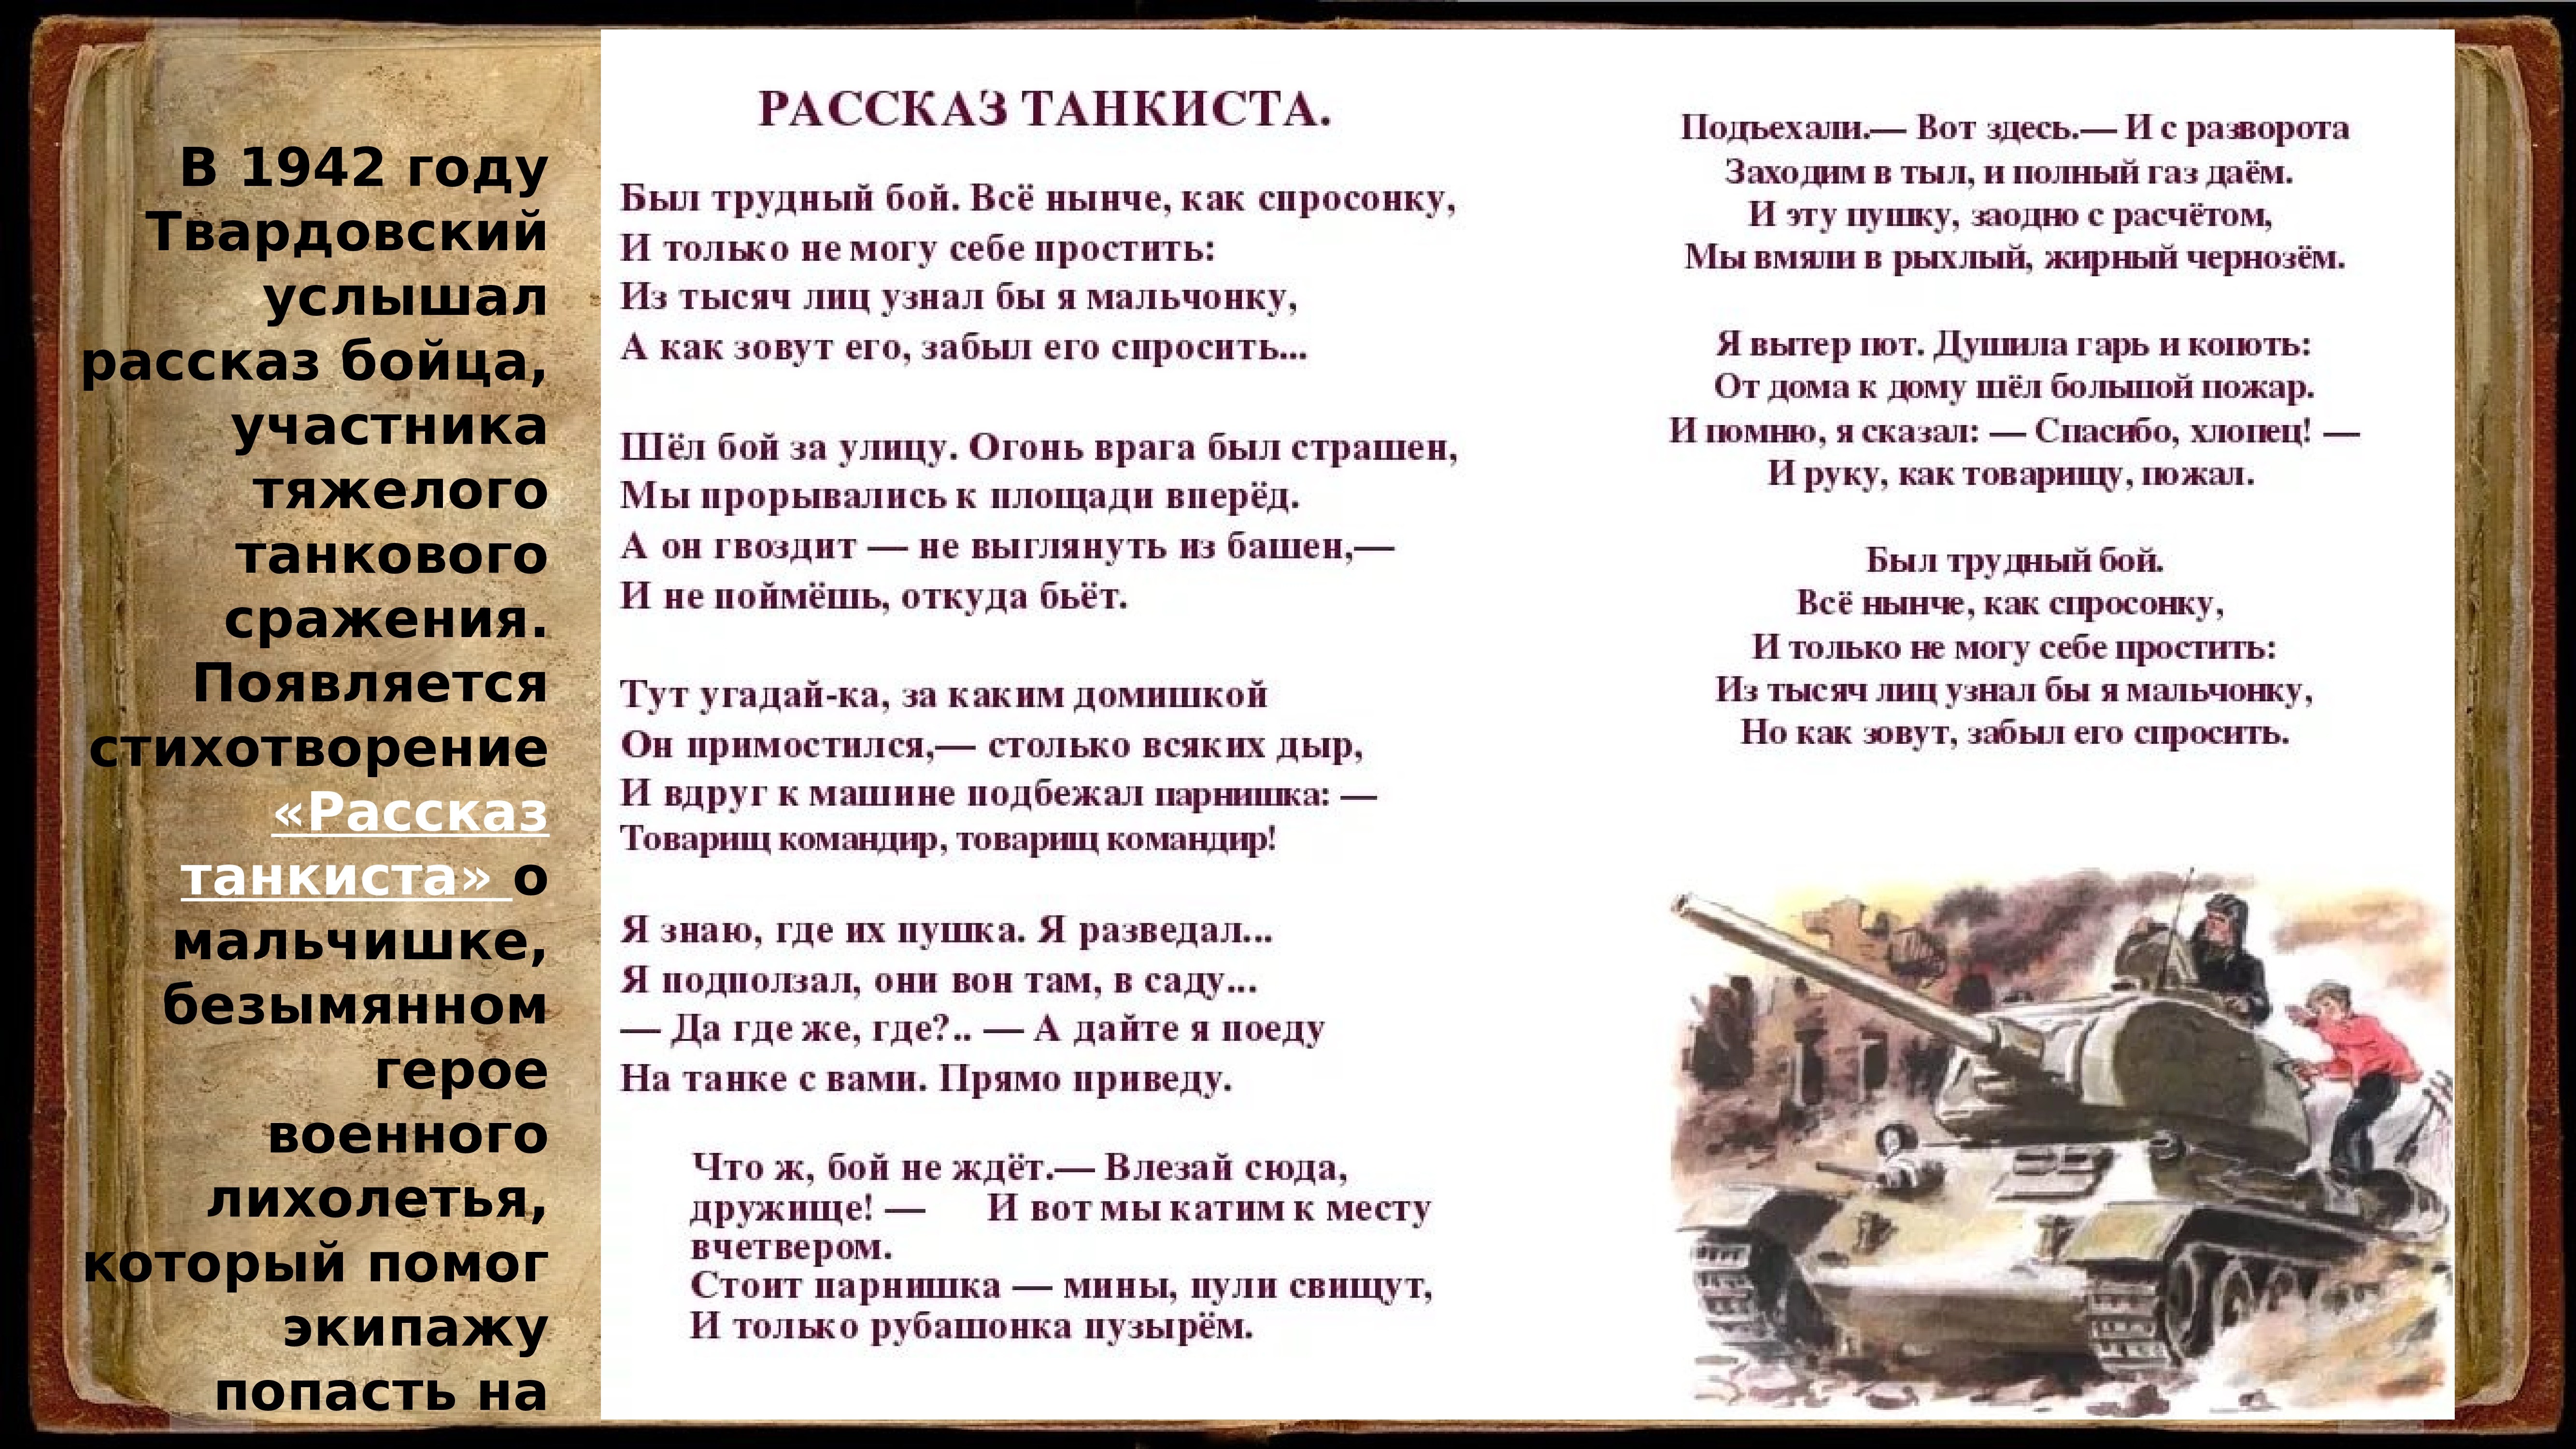 Главный герой стихотворения рассказ танкиста